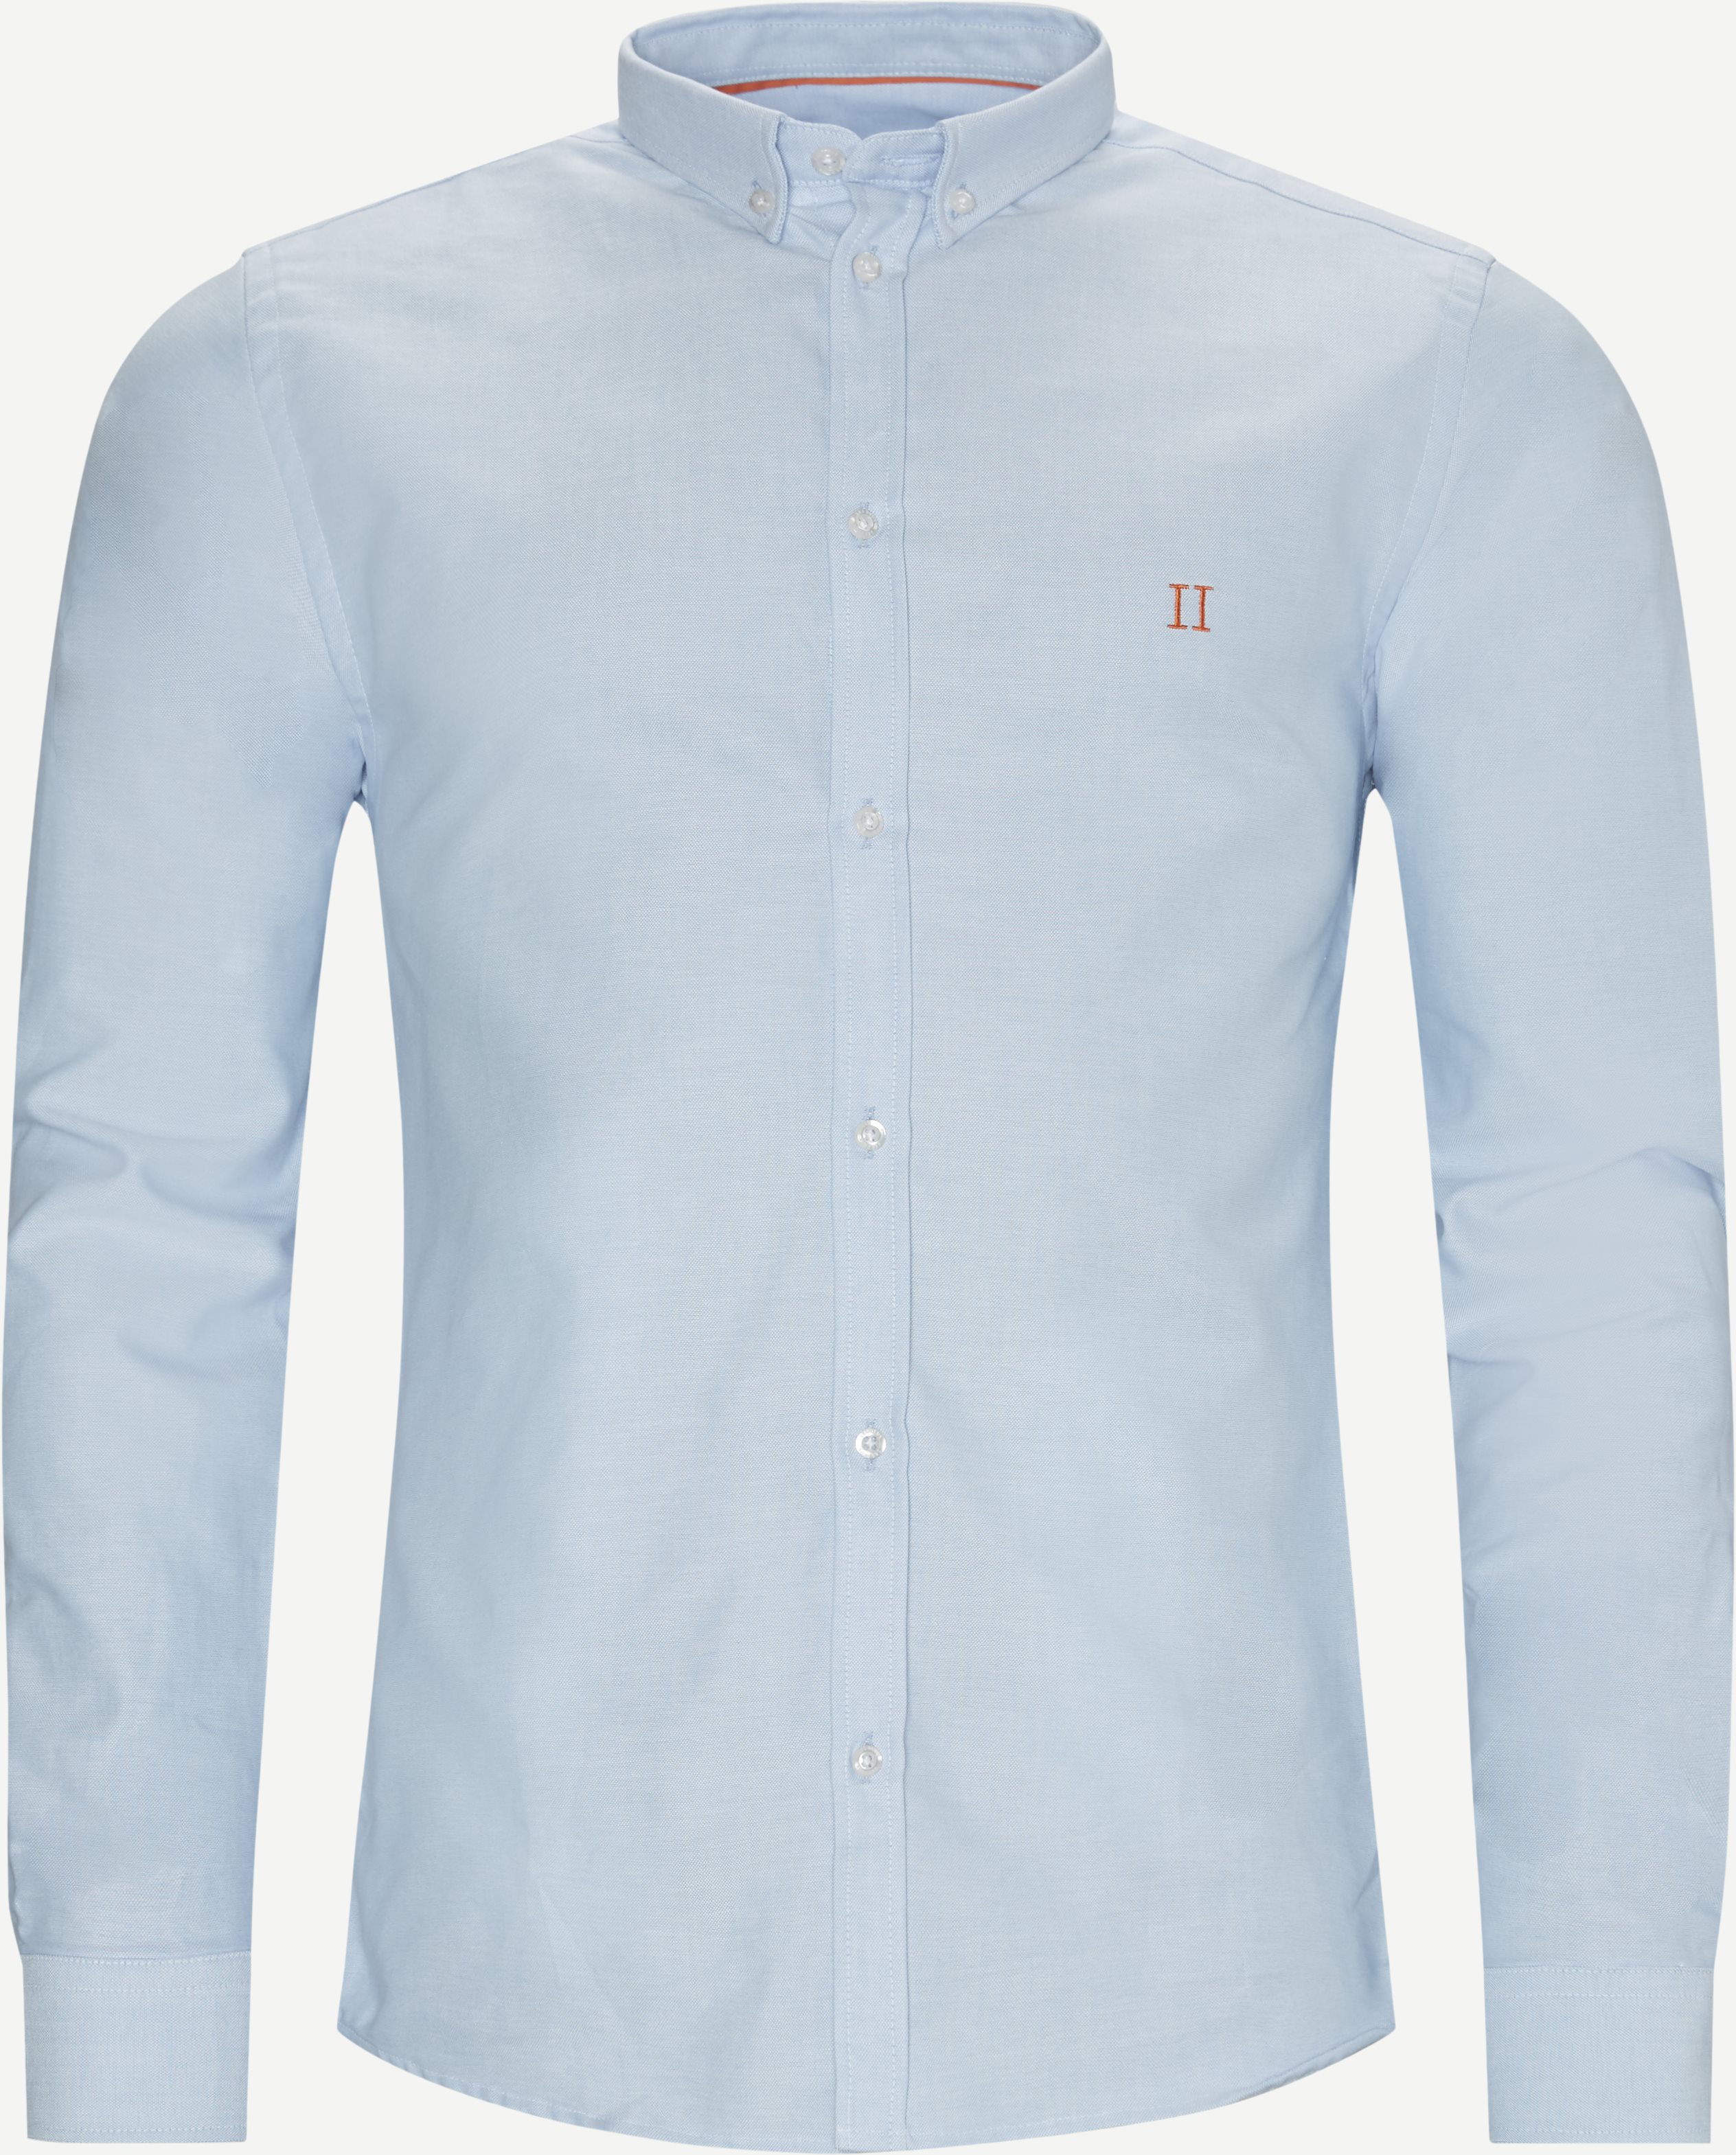 Oliver Oxford Shirt - Skjorter - Slim fit - Blå